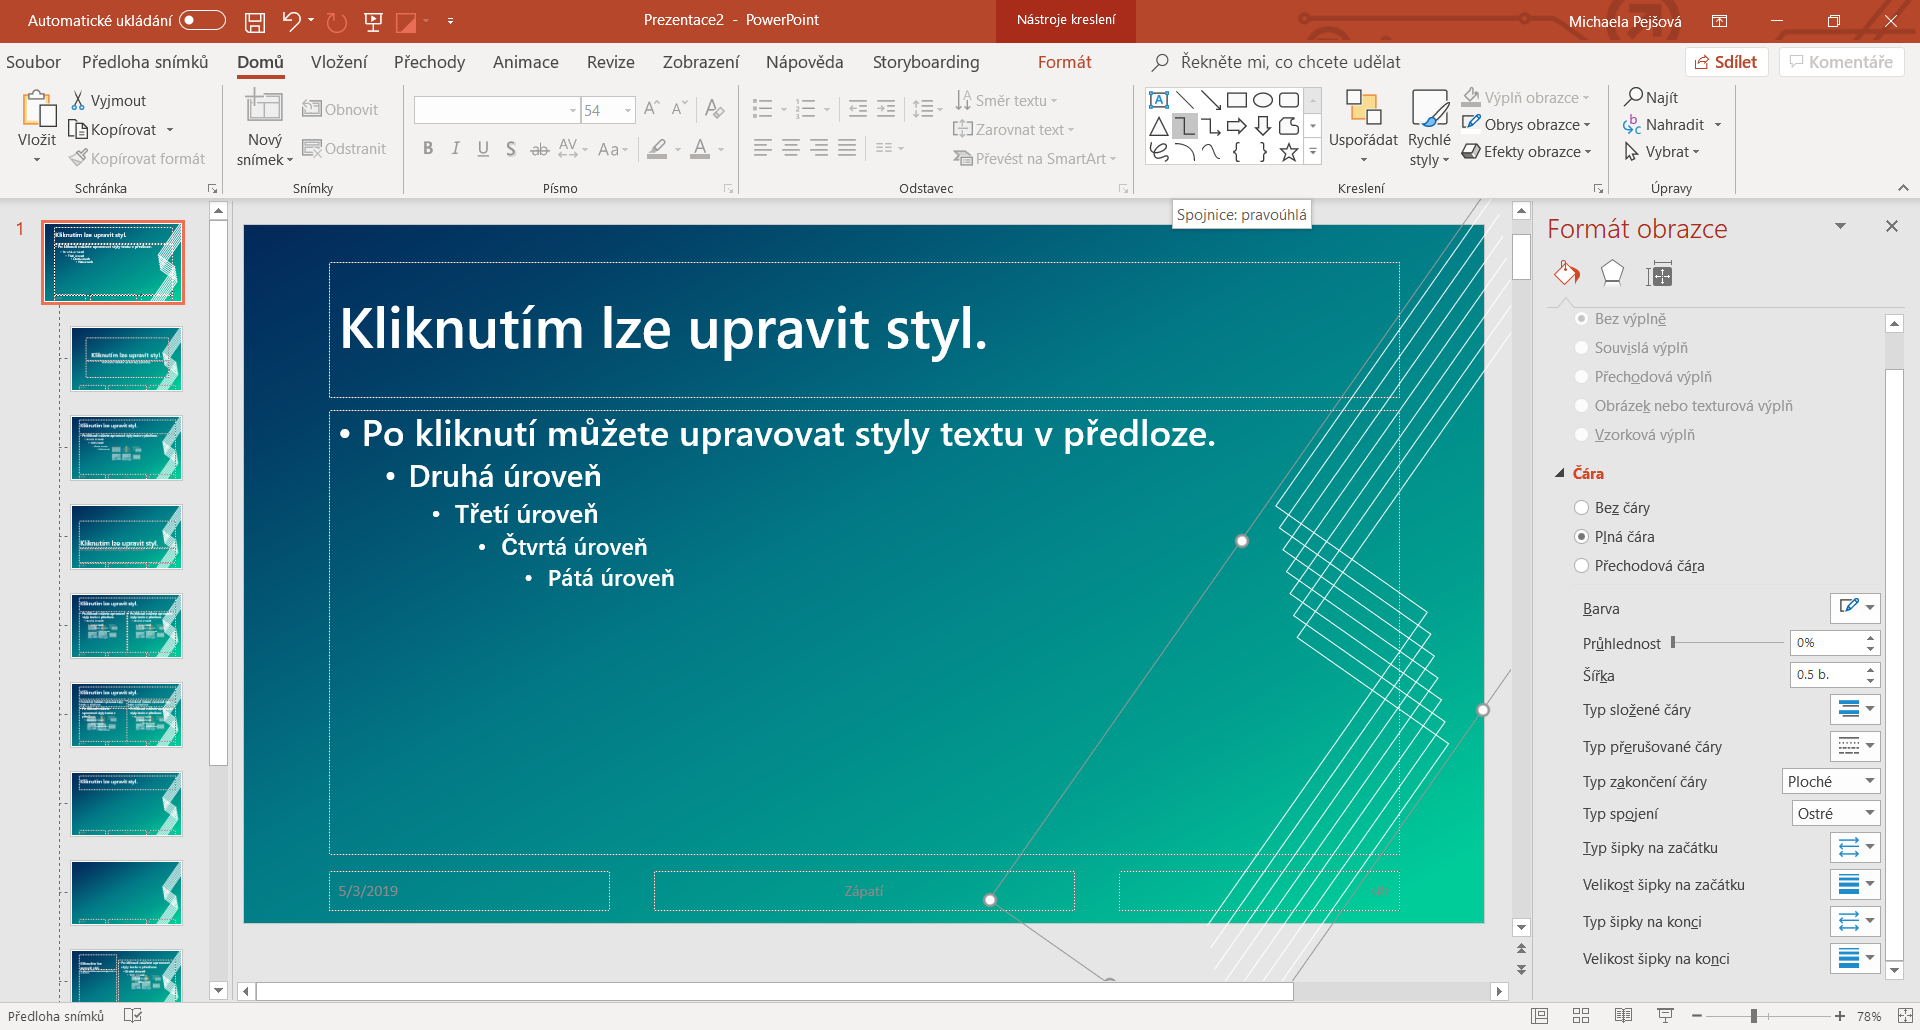 Vytvorenie ornamentu v predlohe snímky v Microsoft PowerPoint - Základy Microsoft PowerPoint